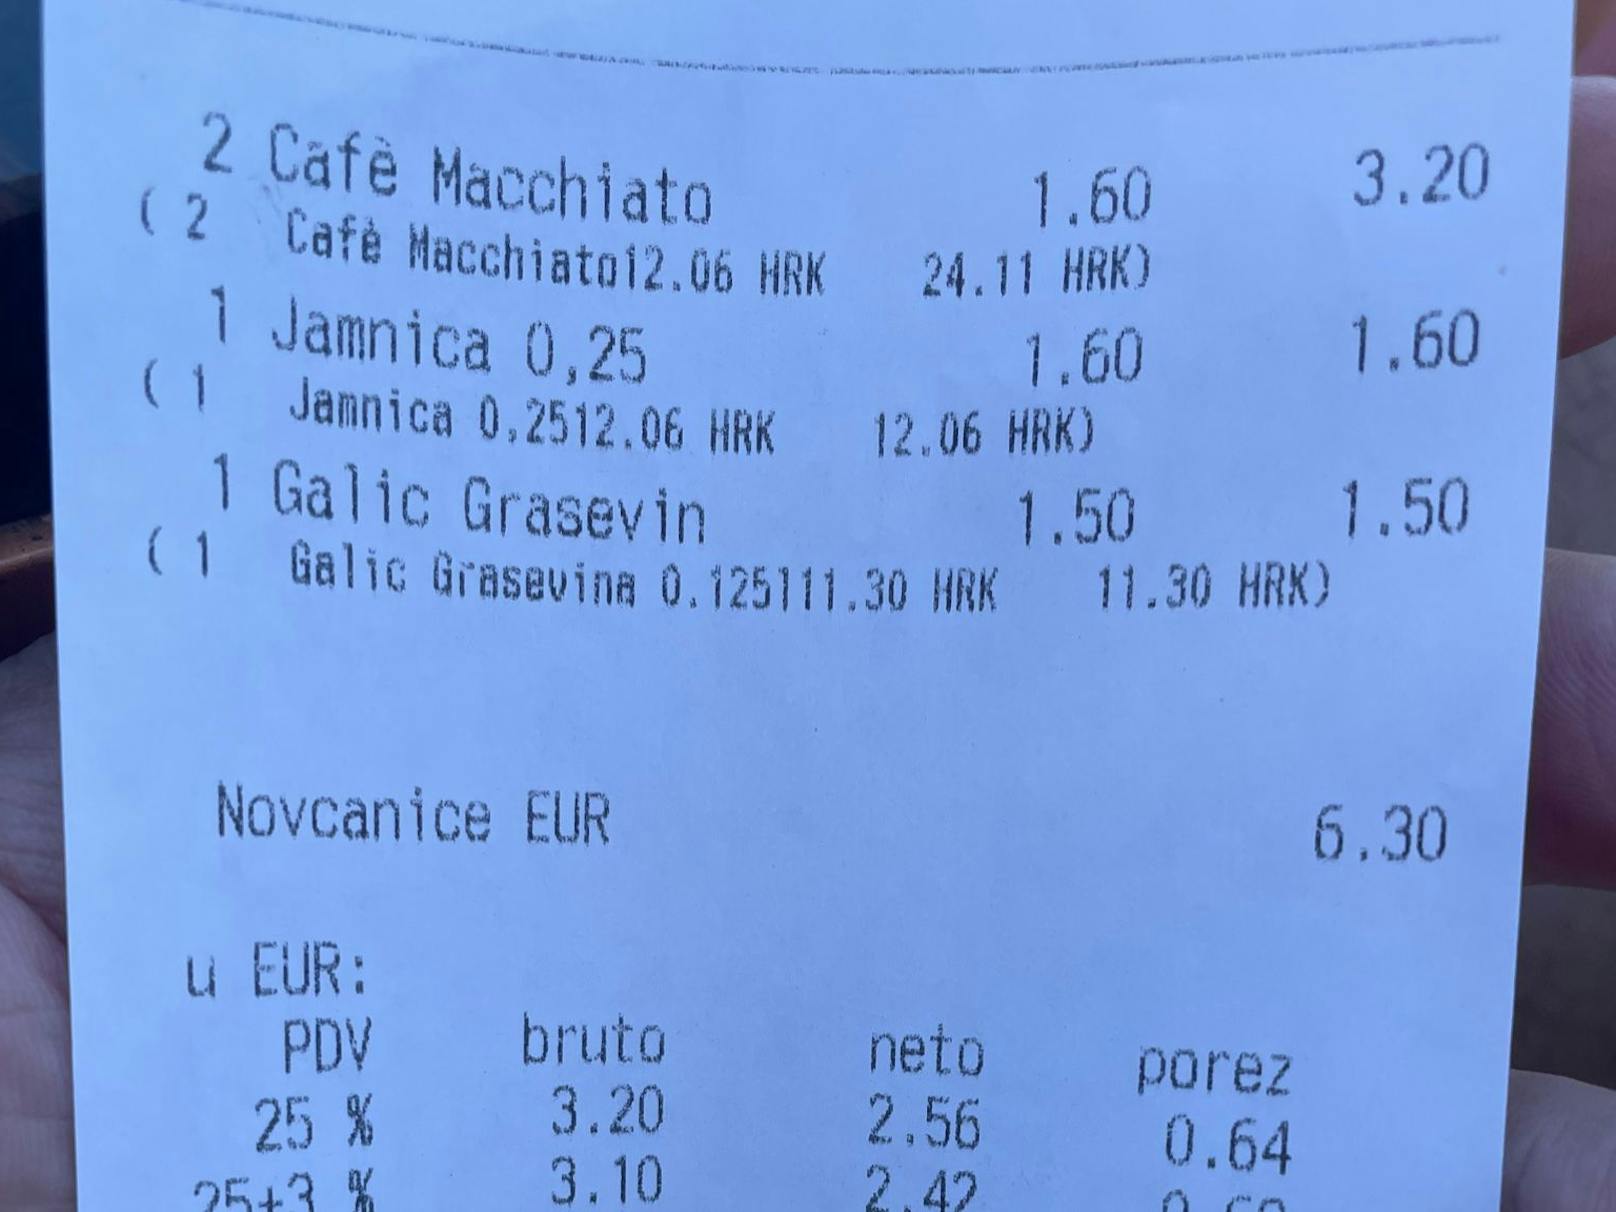 Für 1 Kaffee, 1 Glas Wasser sowie 1 Glas Weißwein zahlte der Wiener nur 6,30€!